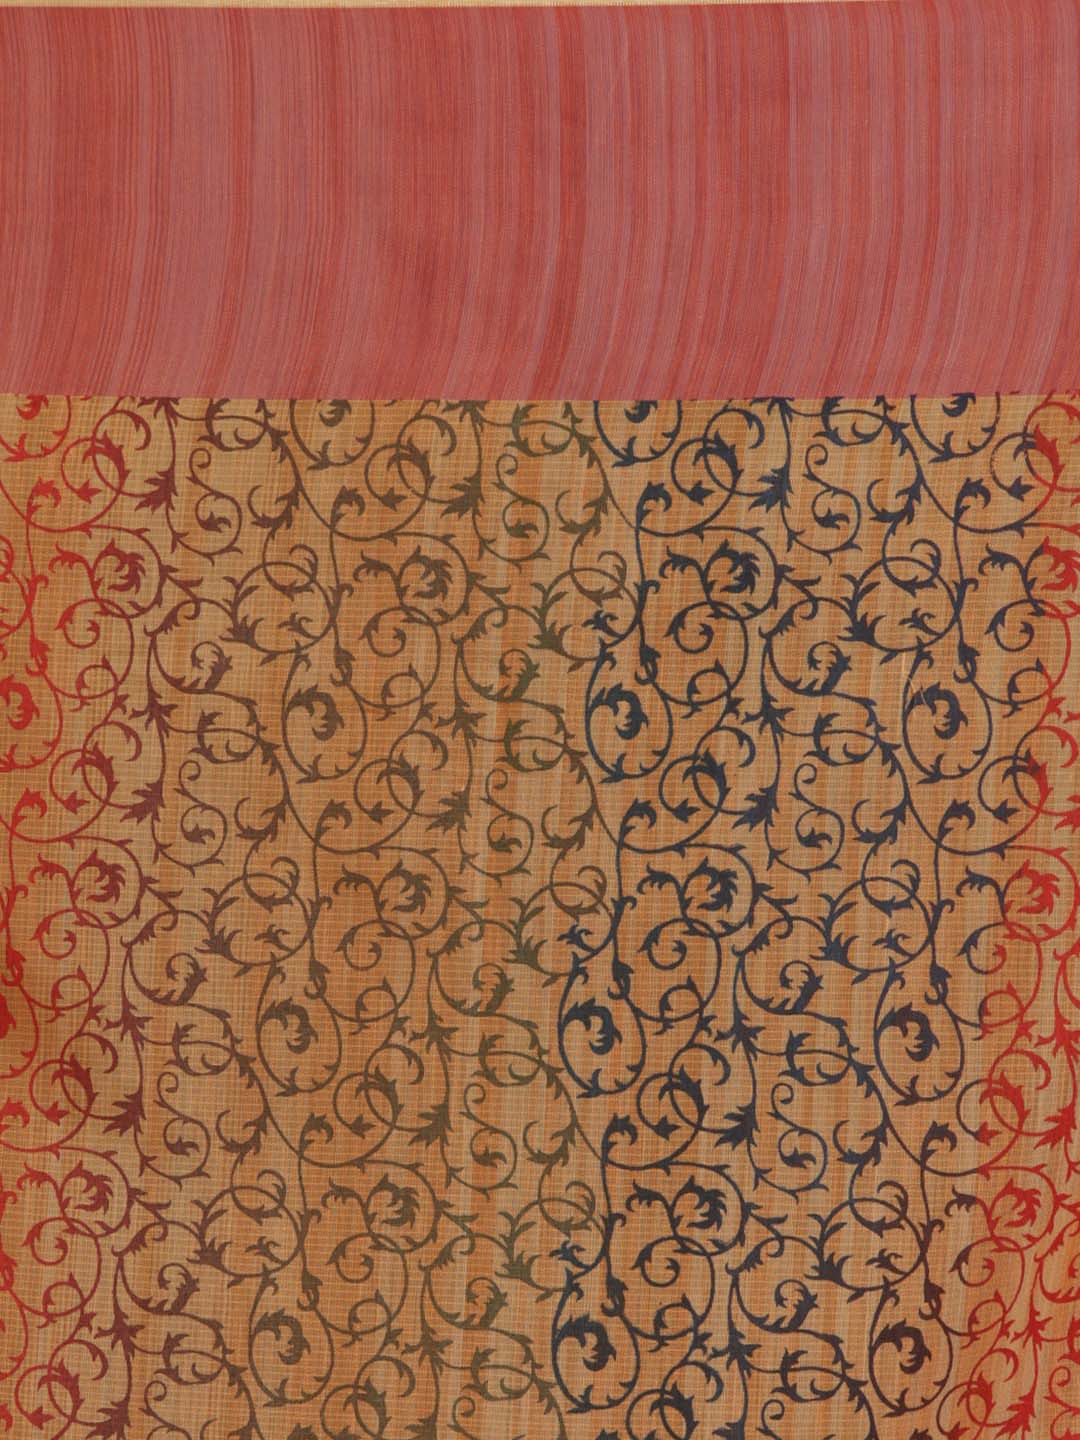 Indethnic Banarasi Peach Printed Daily Wear Saree - Saree Detail View